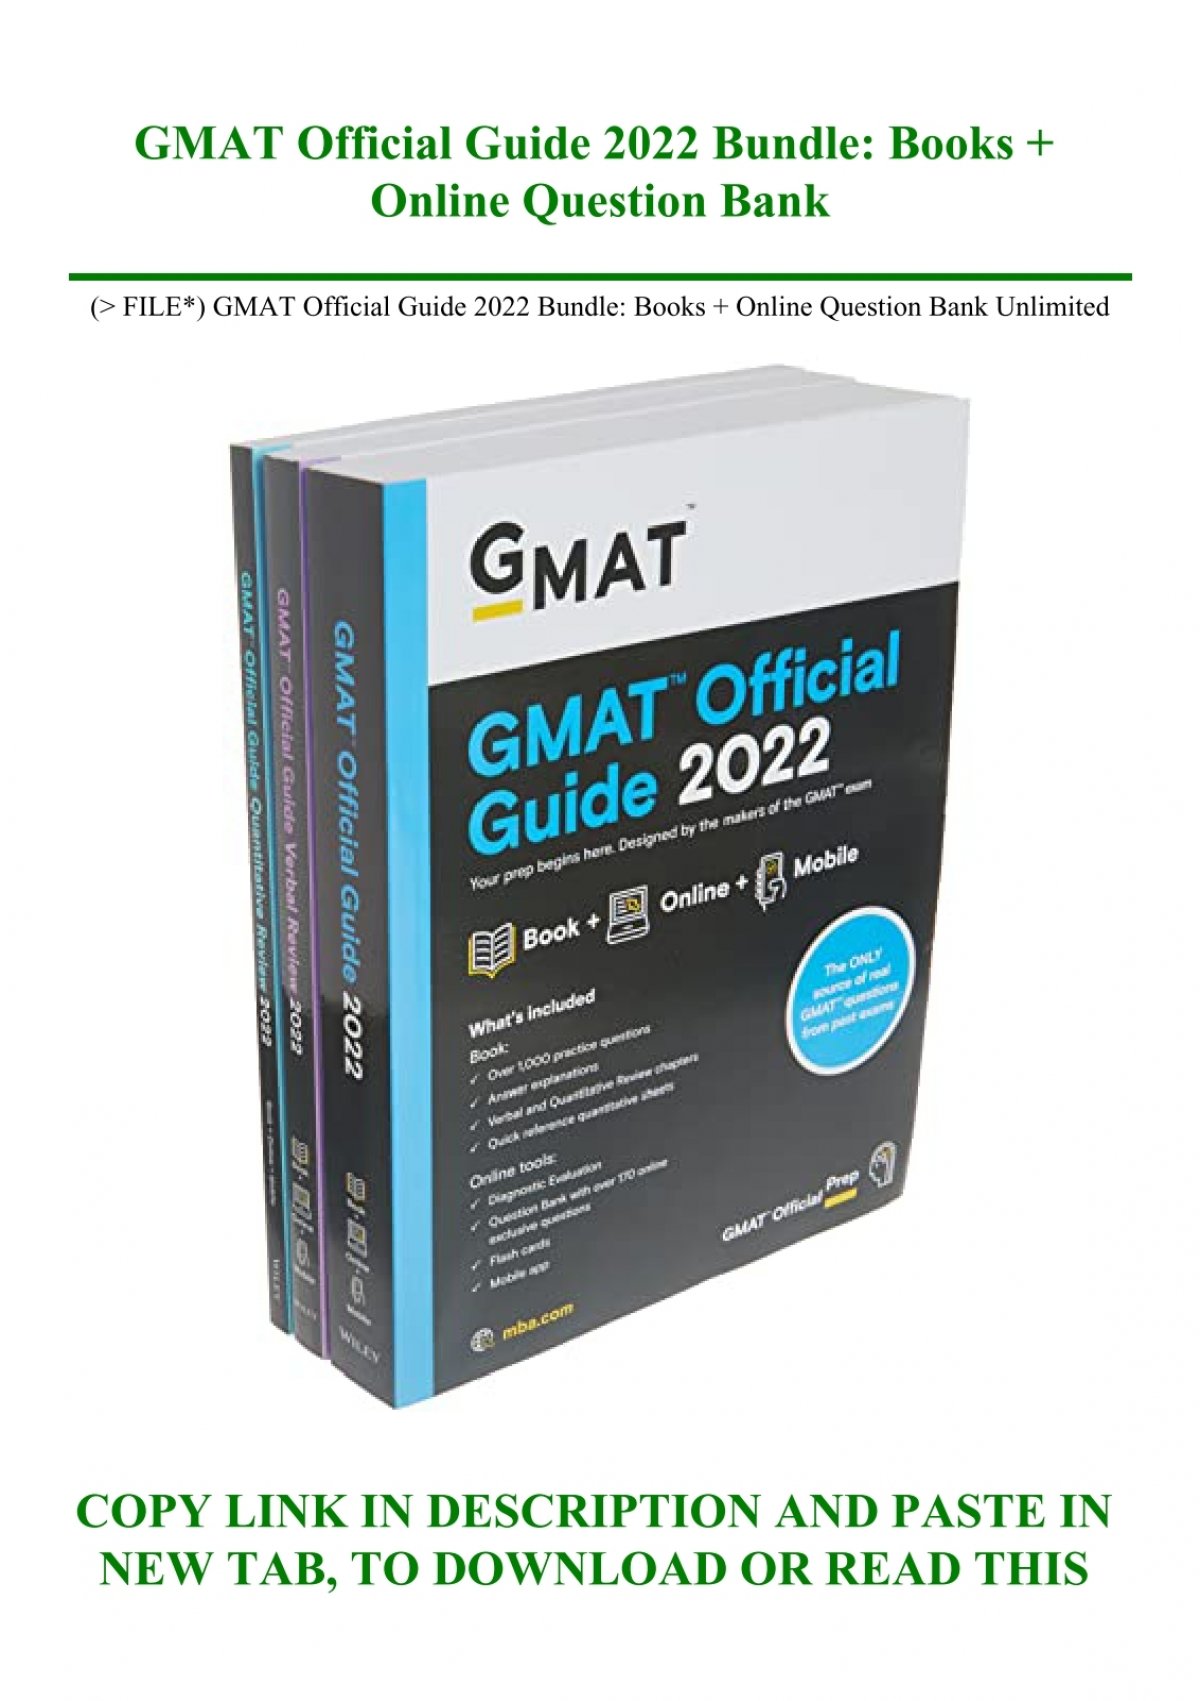 P.D.F. FILE) GMAT Official Guide 2022 Bundle Books + Online